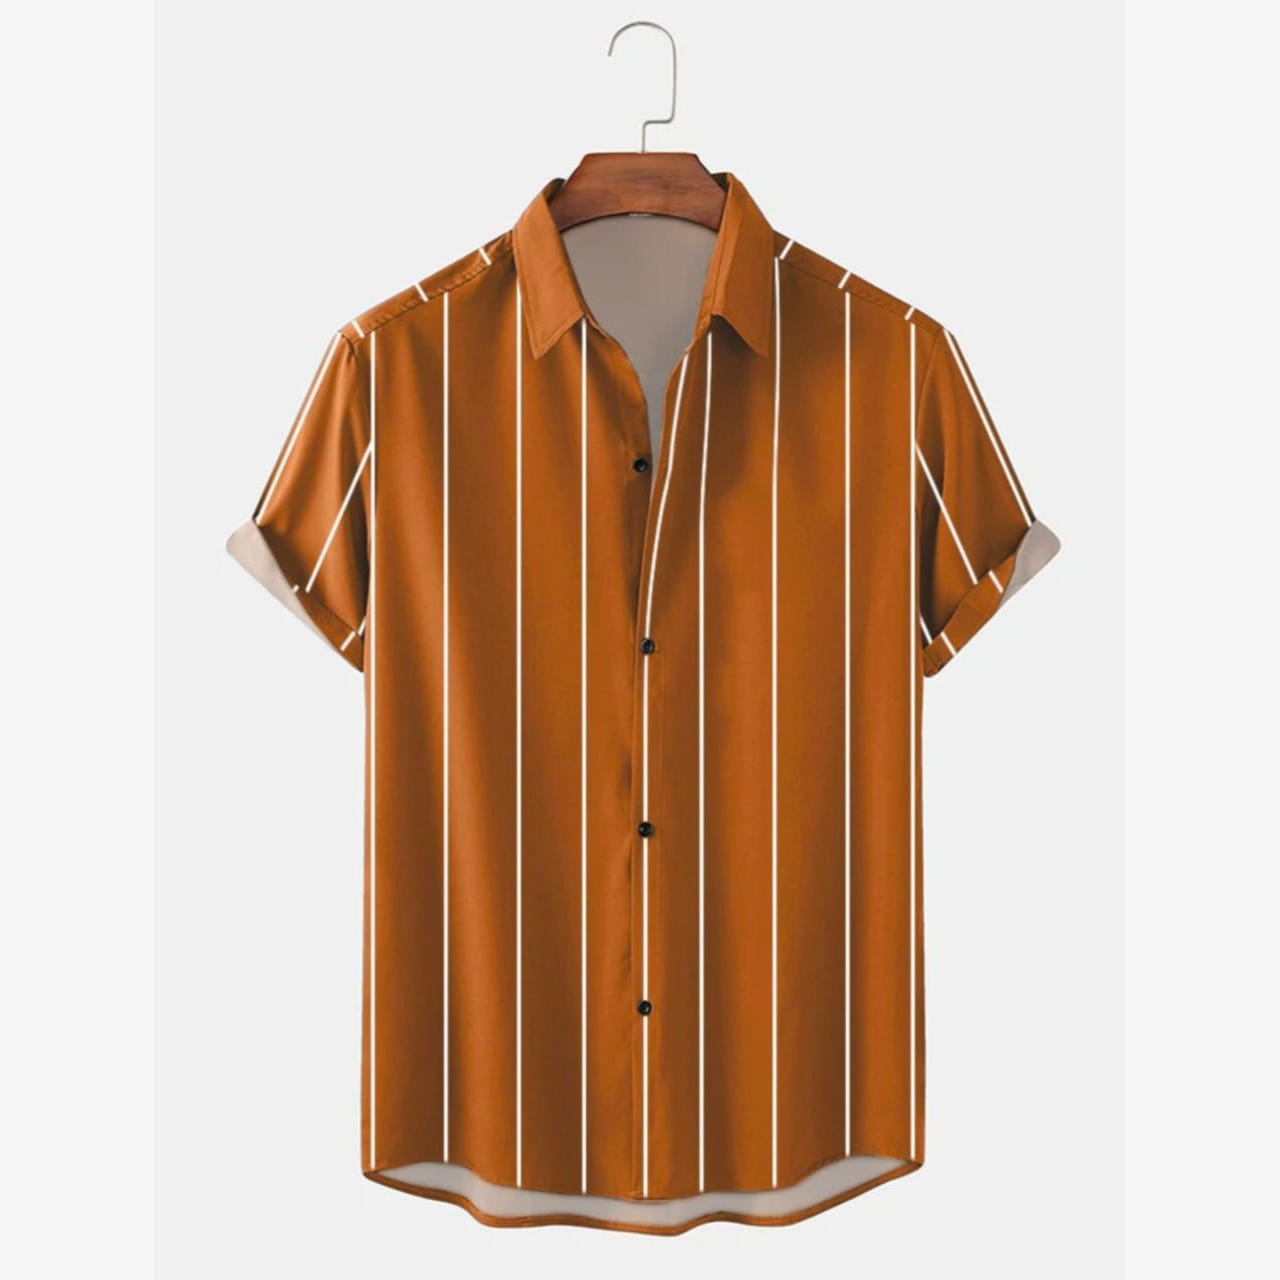 Stylish Regular Slim Fit Shirt (SA) Details